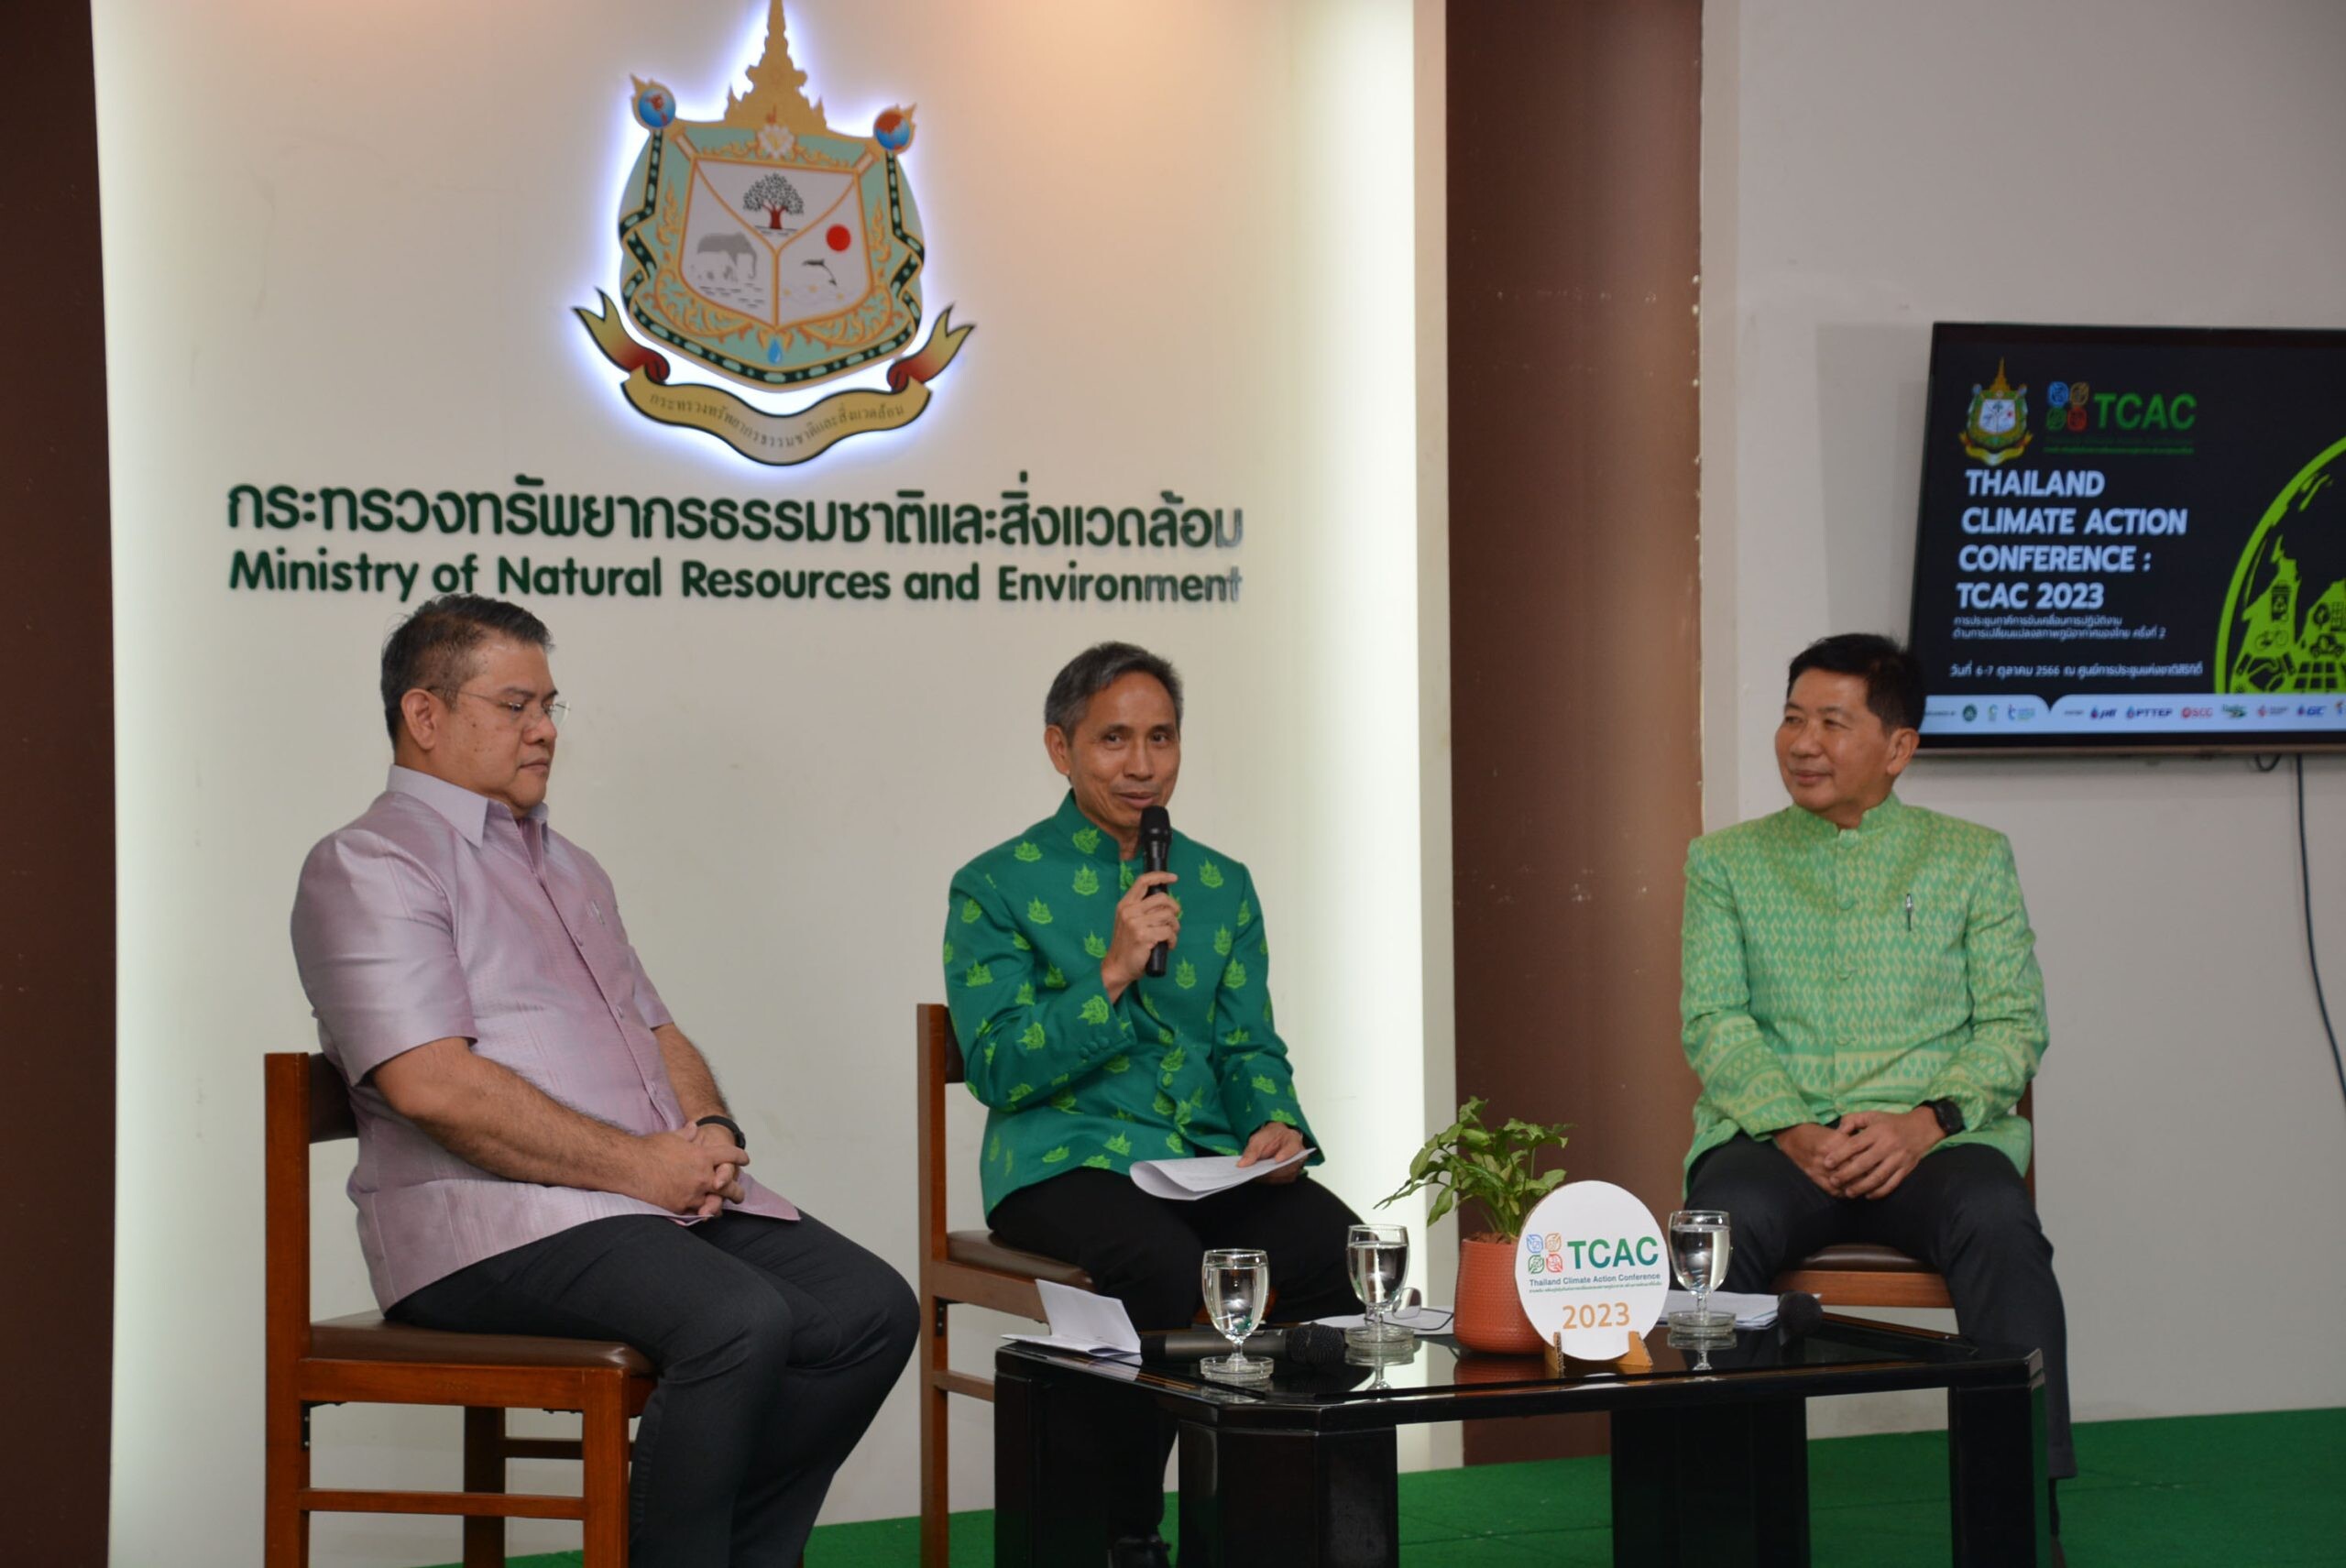 อ.อ.ป. ร่วมงานแถลงข่าว "การประชุมภาคีการขับเคลื่อนการปฏิบัติงานด้านการเปลี่ยนแปลงสภาพภูมิอากาศของไทย ครั้งที่ 2 (Thailand Climate Action Conference : TCAC 2023)"